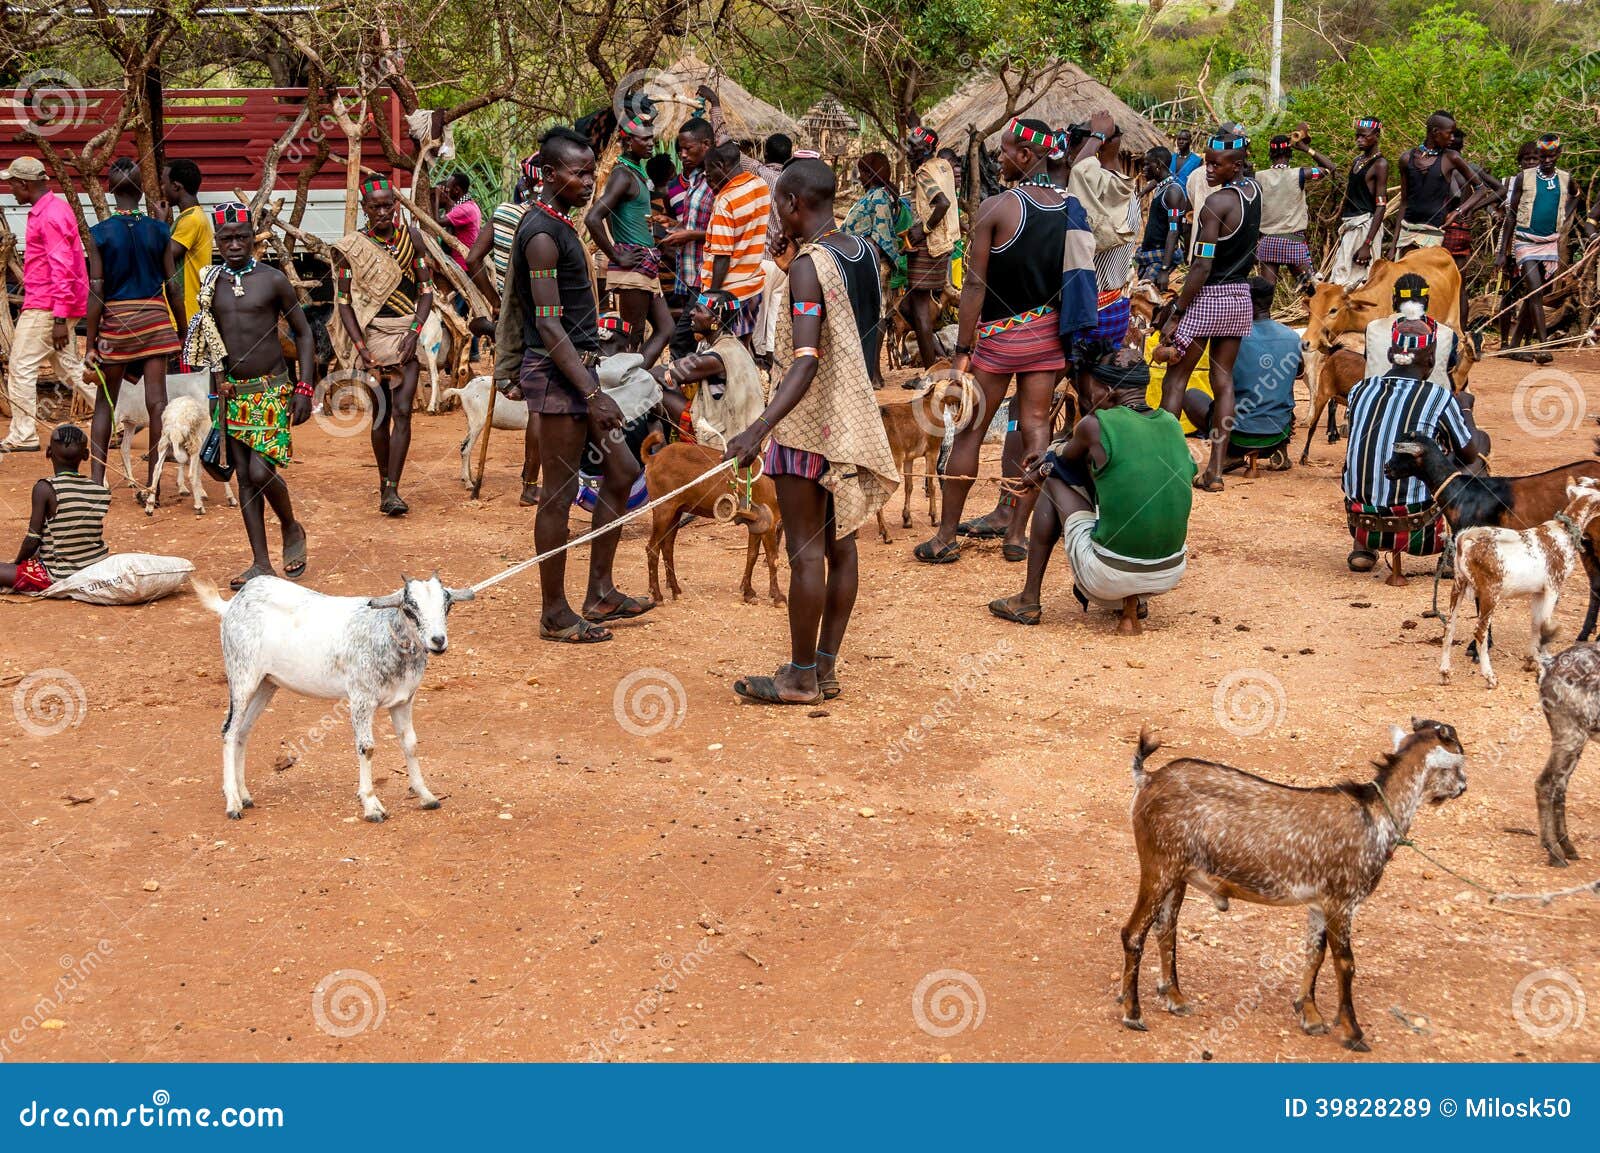 Al mercato animale in Alduba. ALDUBA, ETIOPIA - MARZO 18,2014 - il Banna sono pastori musulmani che vivono negli altopiani di sud-ovest Etiopia. Soprattutto sono situati nella provincia di Gemu Gofa, che è ad est del fiume di Omo ed a nord del lago Turkana.